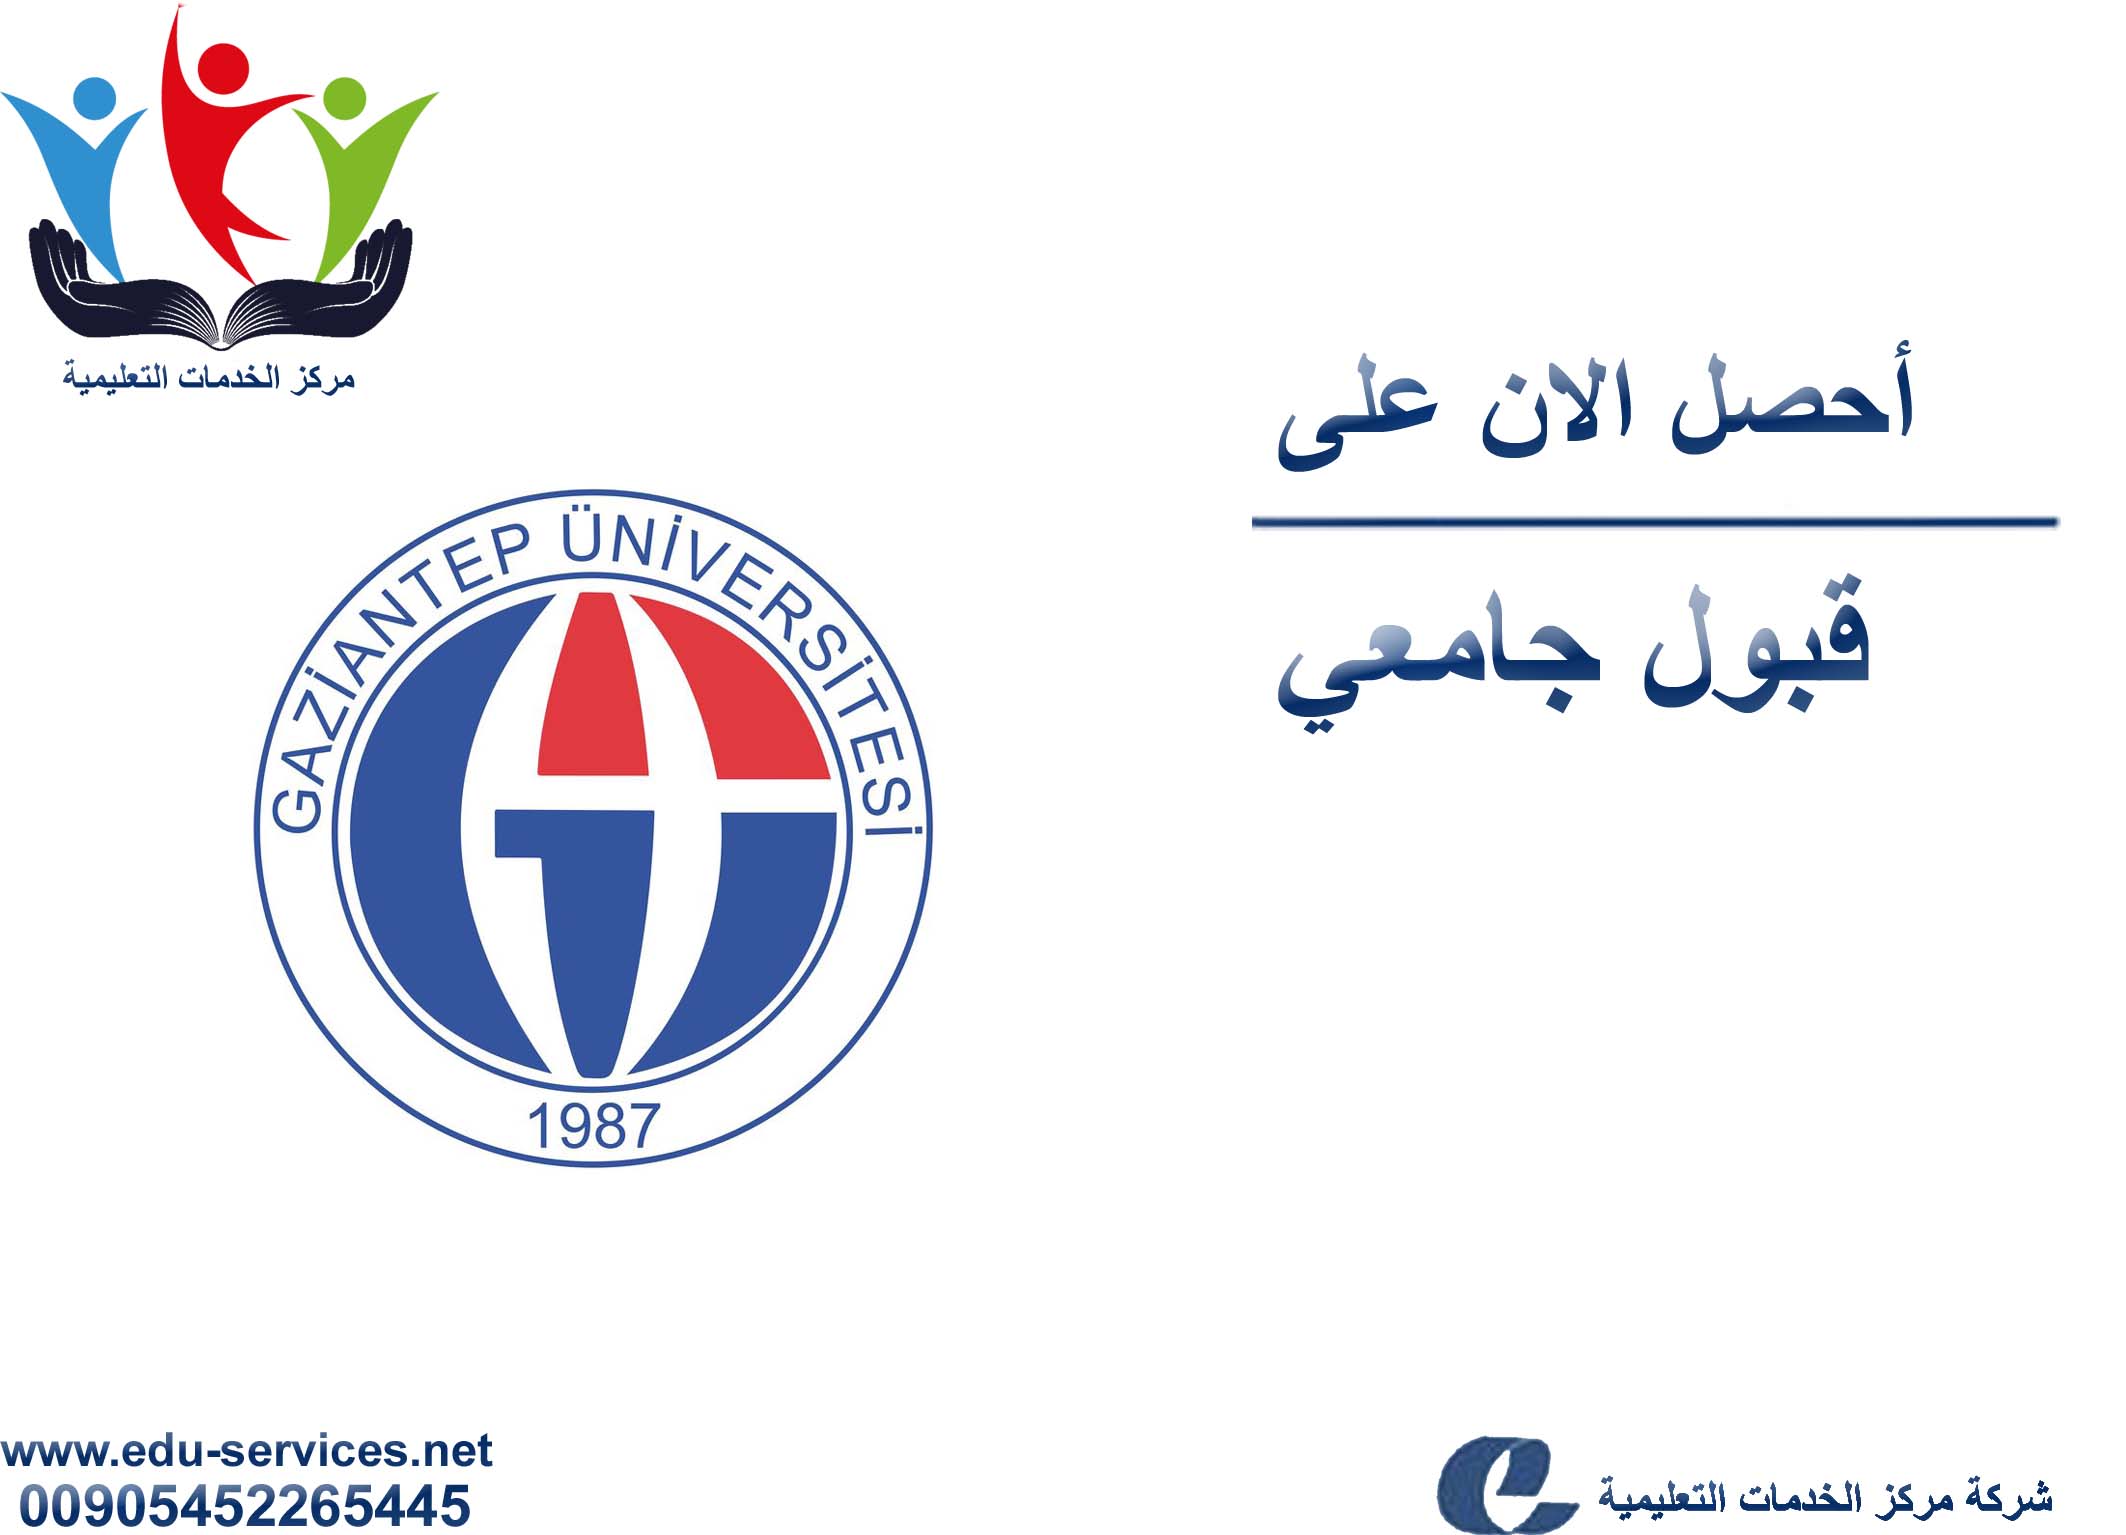 إعلان افتتاح التسجيل على جامعة غازي عنتاب لبرنامج الدراسات العليا للعام 2018